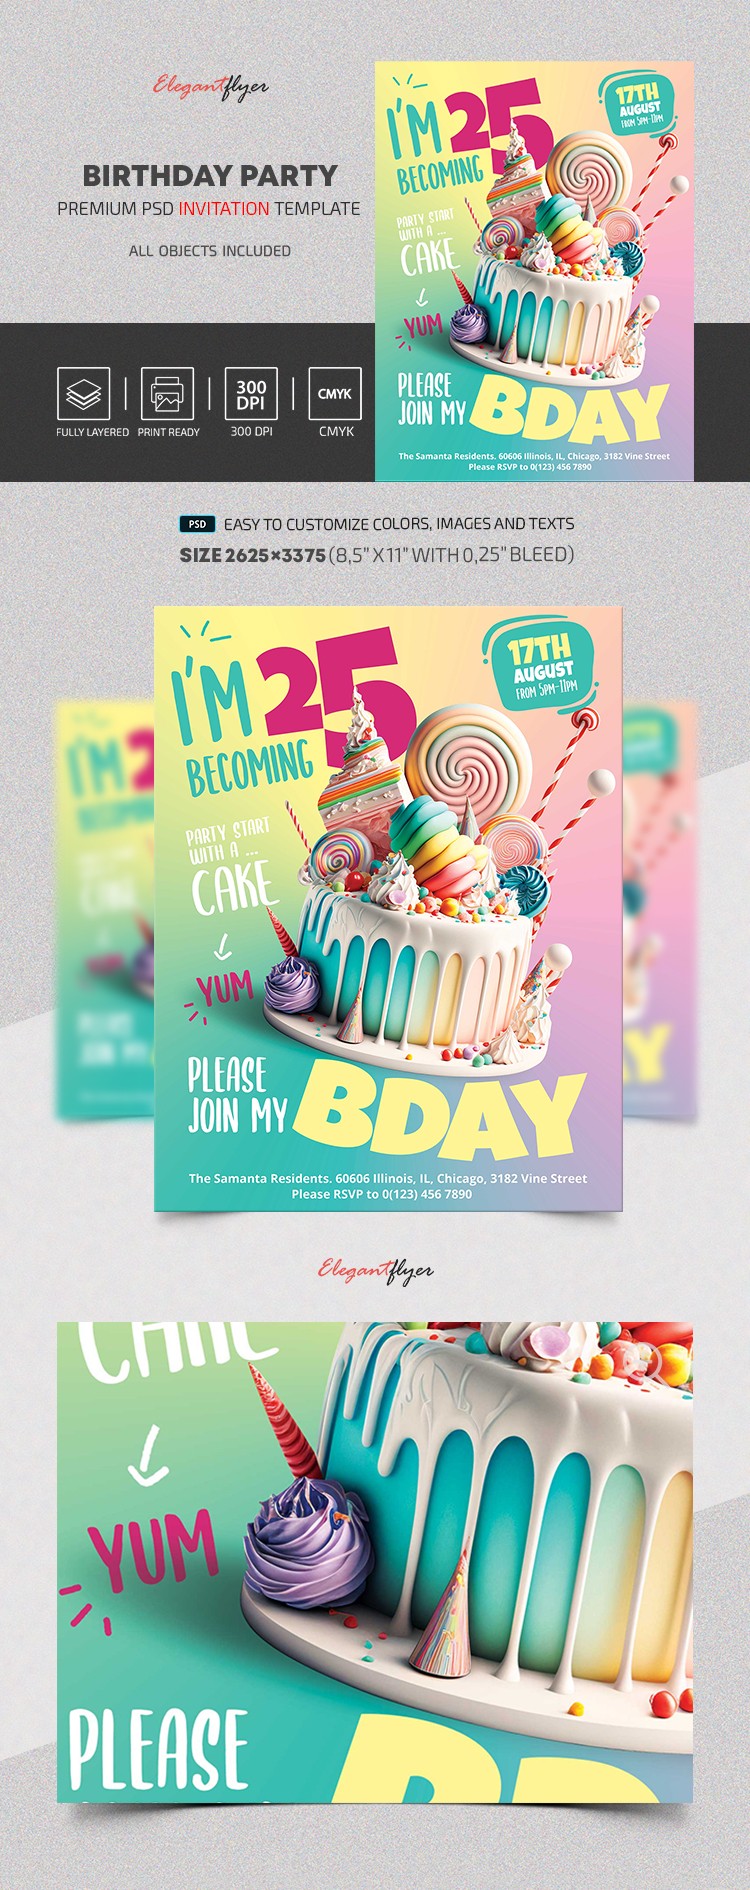 Birthday Party Invitation by ElegantFlyer